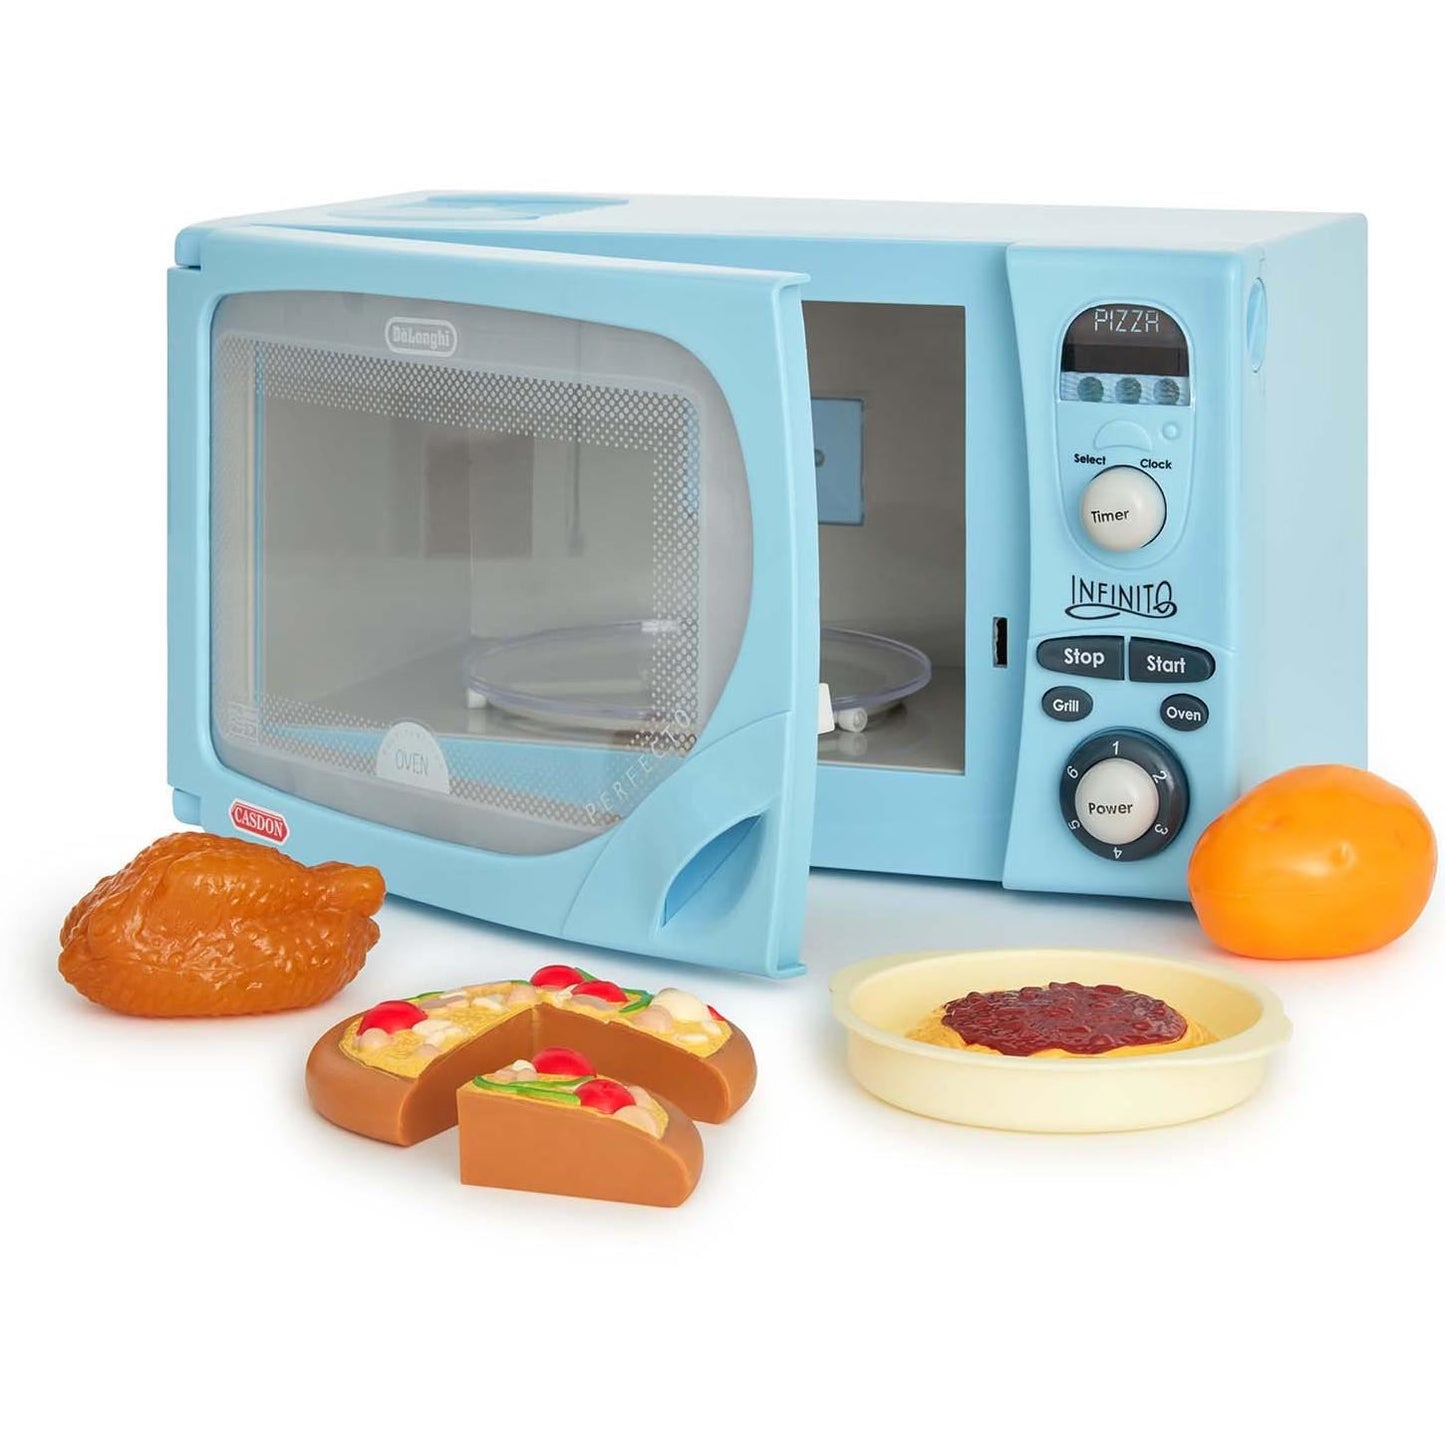 Toy De Longhi Microwave